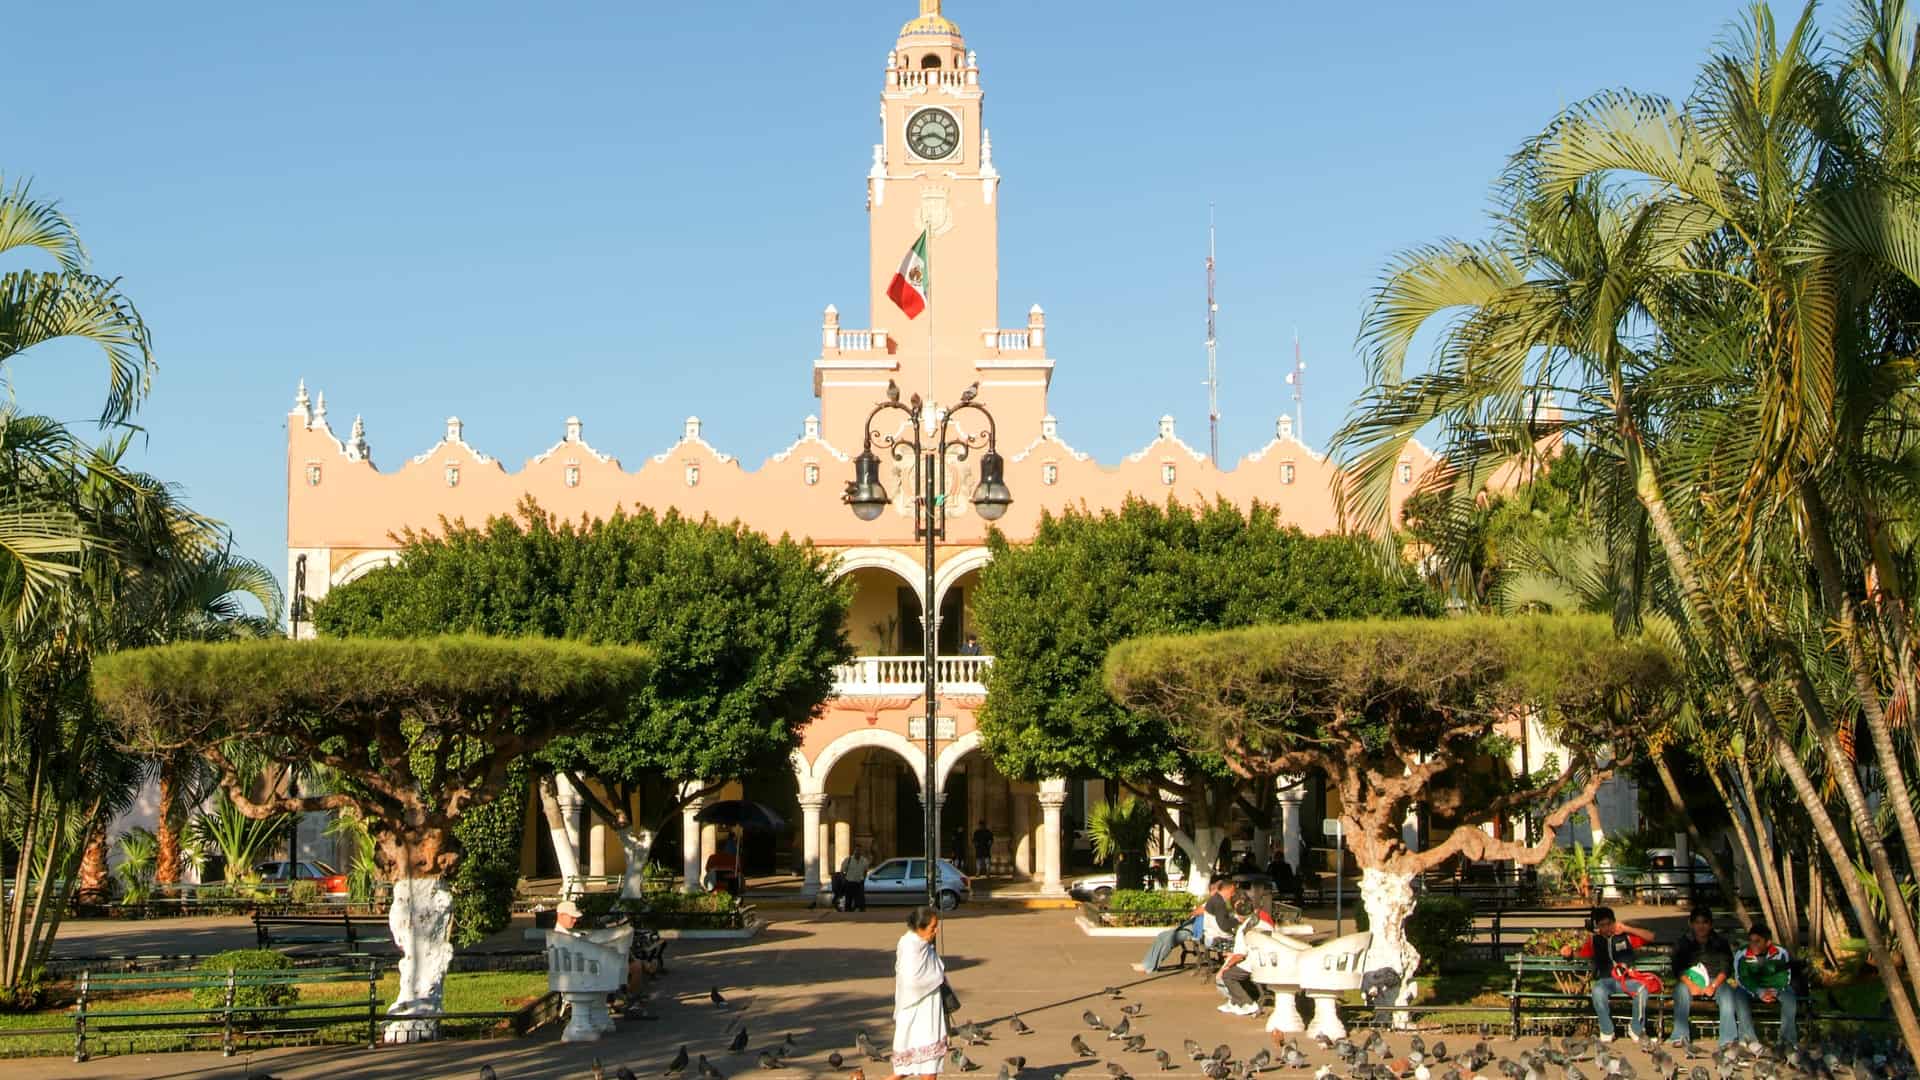 Plaza de la ciudad de Mérida que representa las sucursales de telcel en esa ciudad